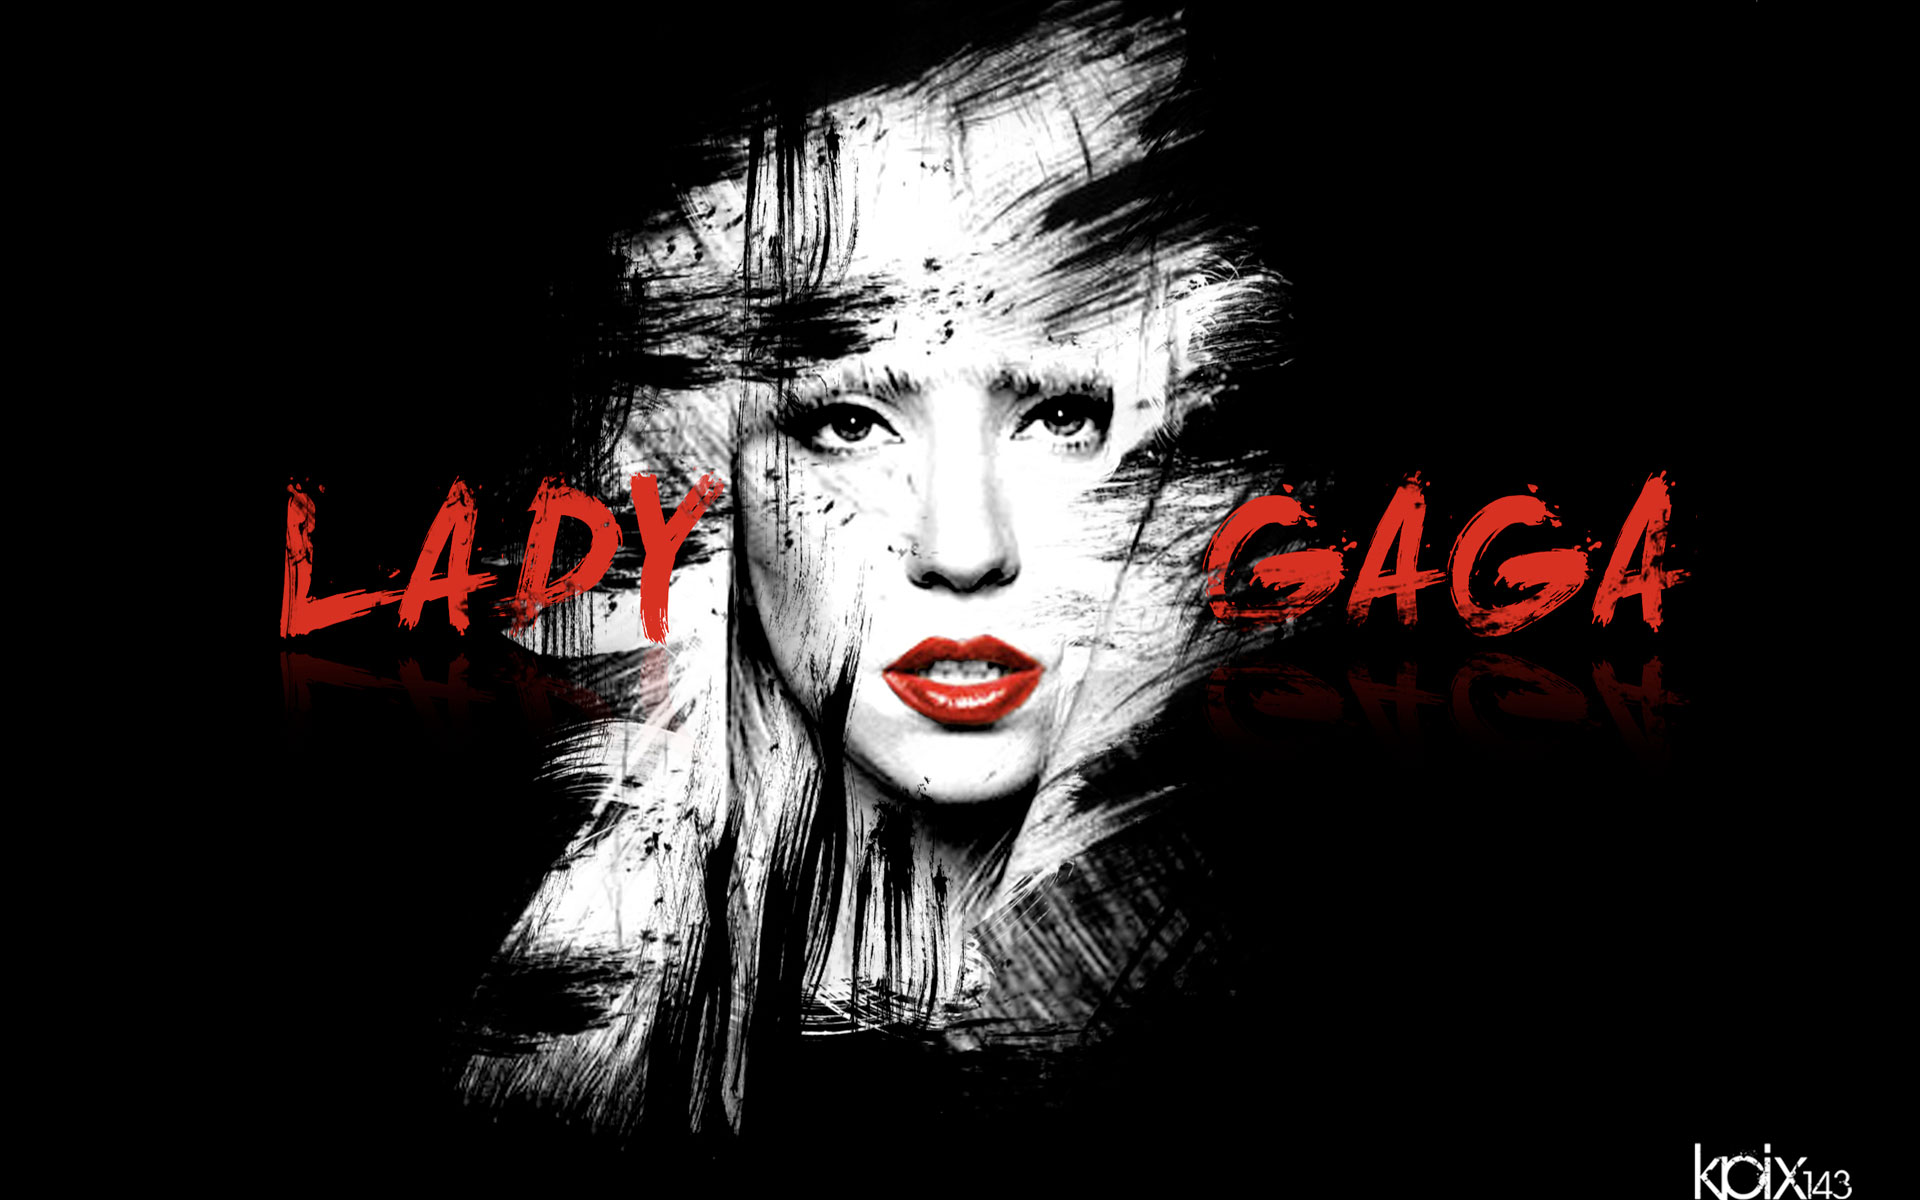 Скачать обои бесплатно Леди Гага, Музыка картинка на рабочий стол ПК